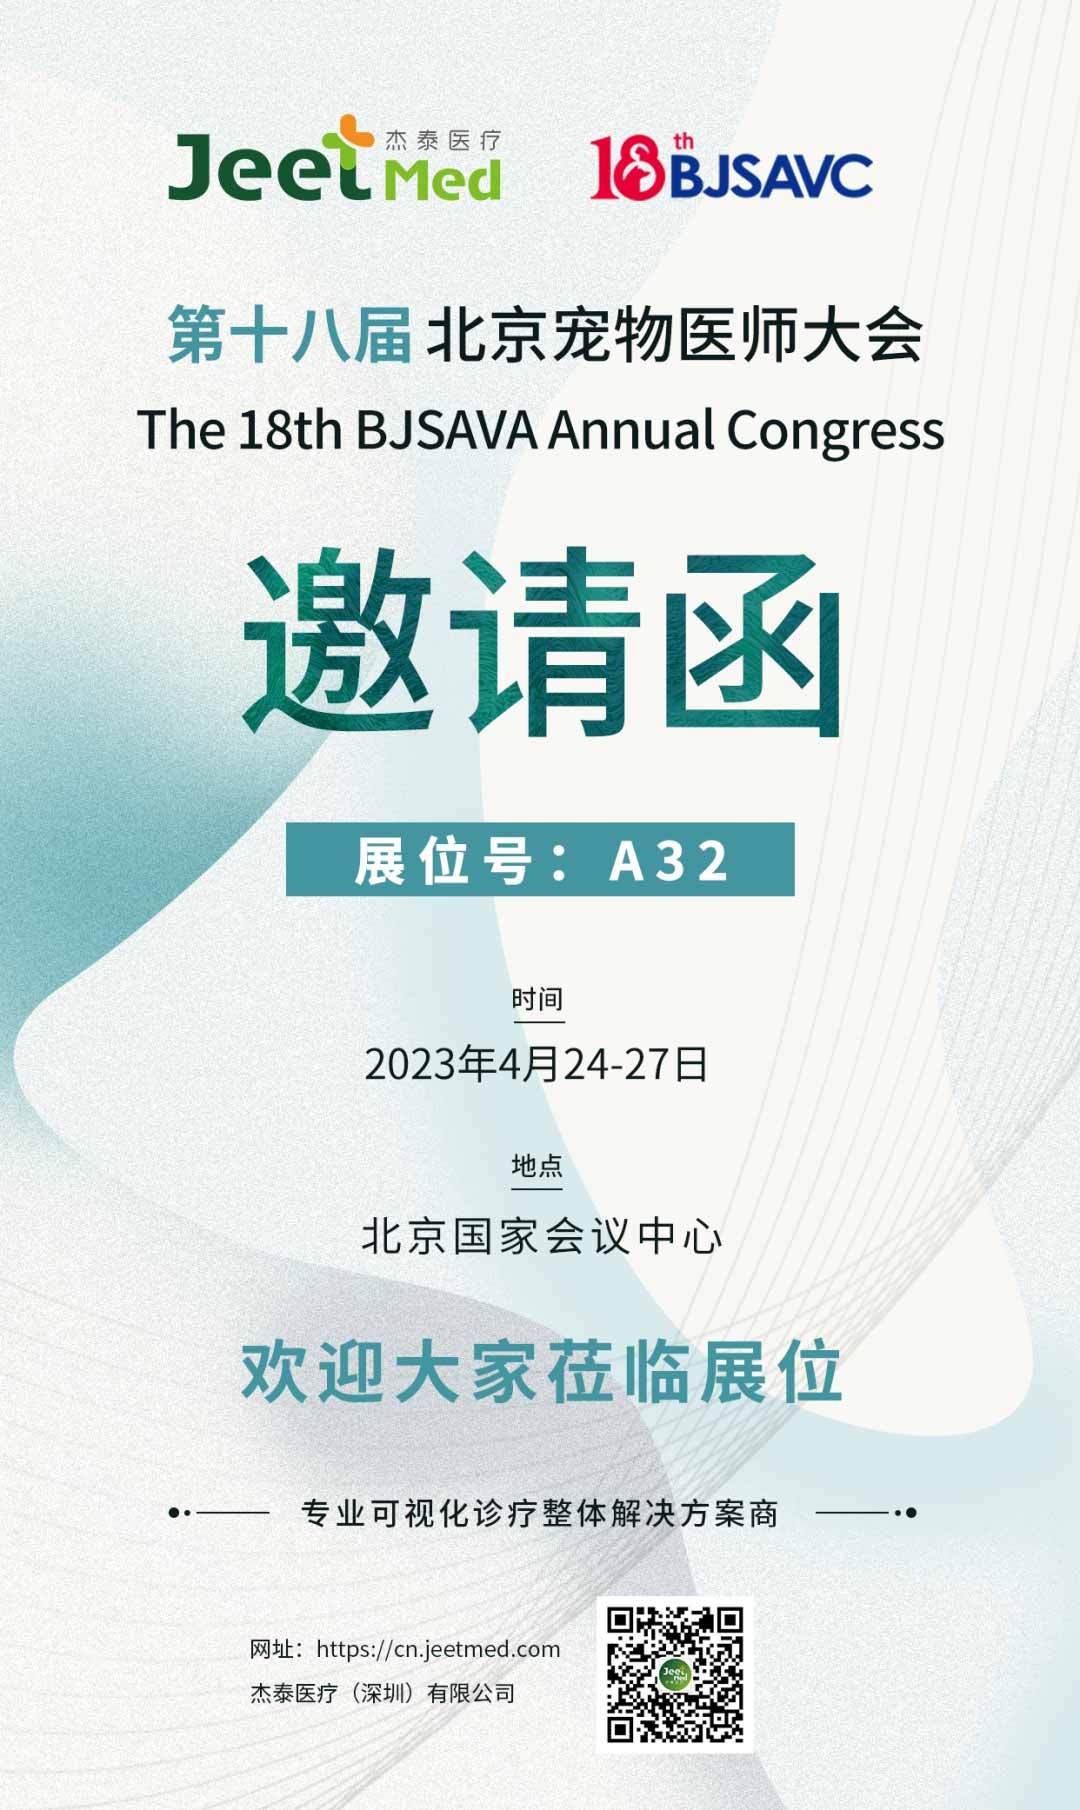 展会预告 | 杰泰医疗诚邀您共聚北京宠物医师大会（BJSAVC 2023）